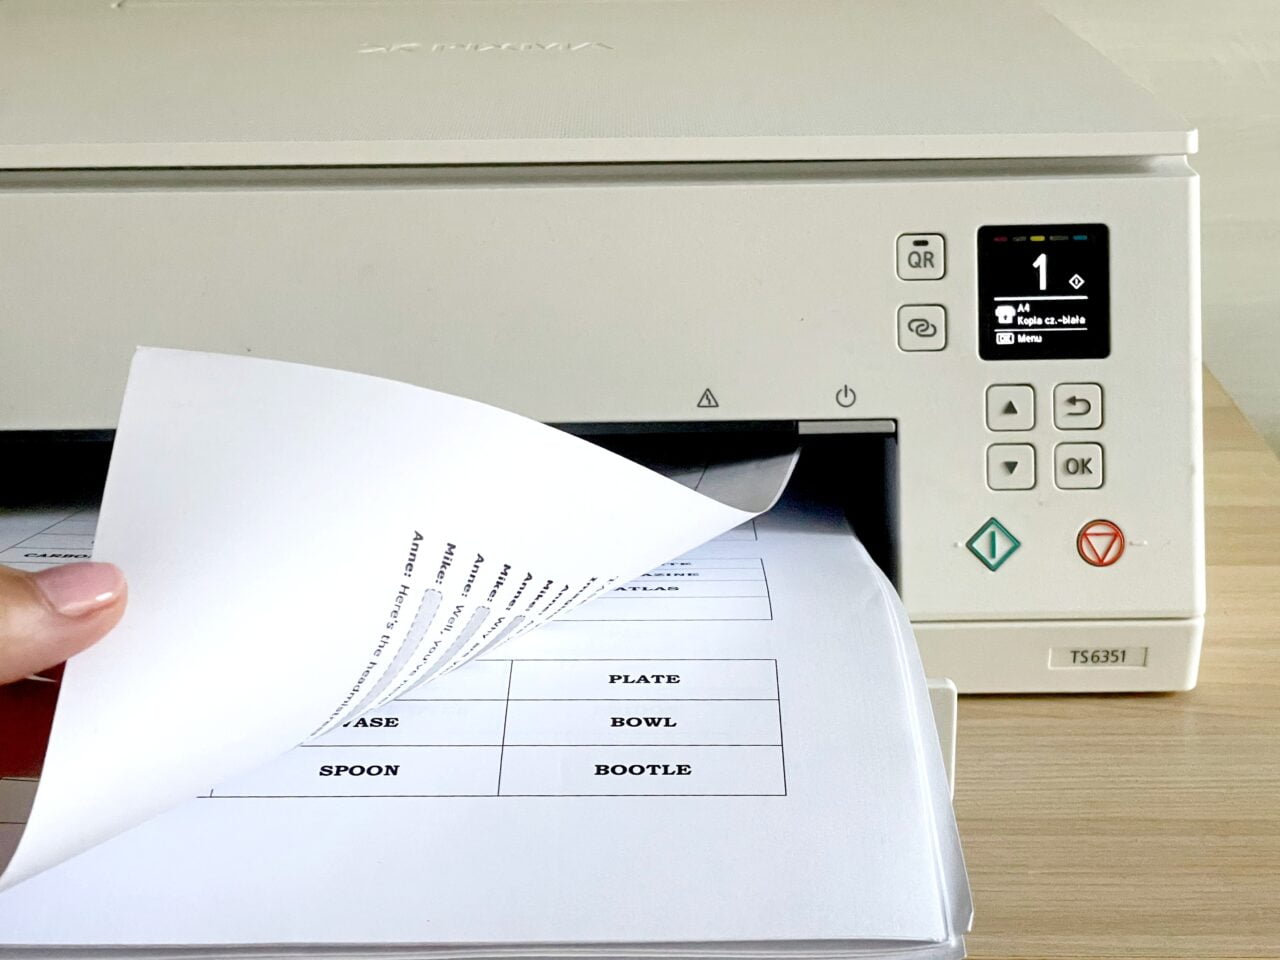 Dłoń osoby wyjmującej wydrukowane arkusze papieru z biurowego urządzenia wielofunkcyjnego. Przykład na druk dwustronny